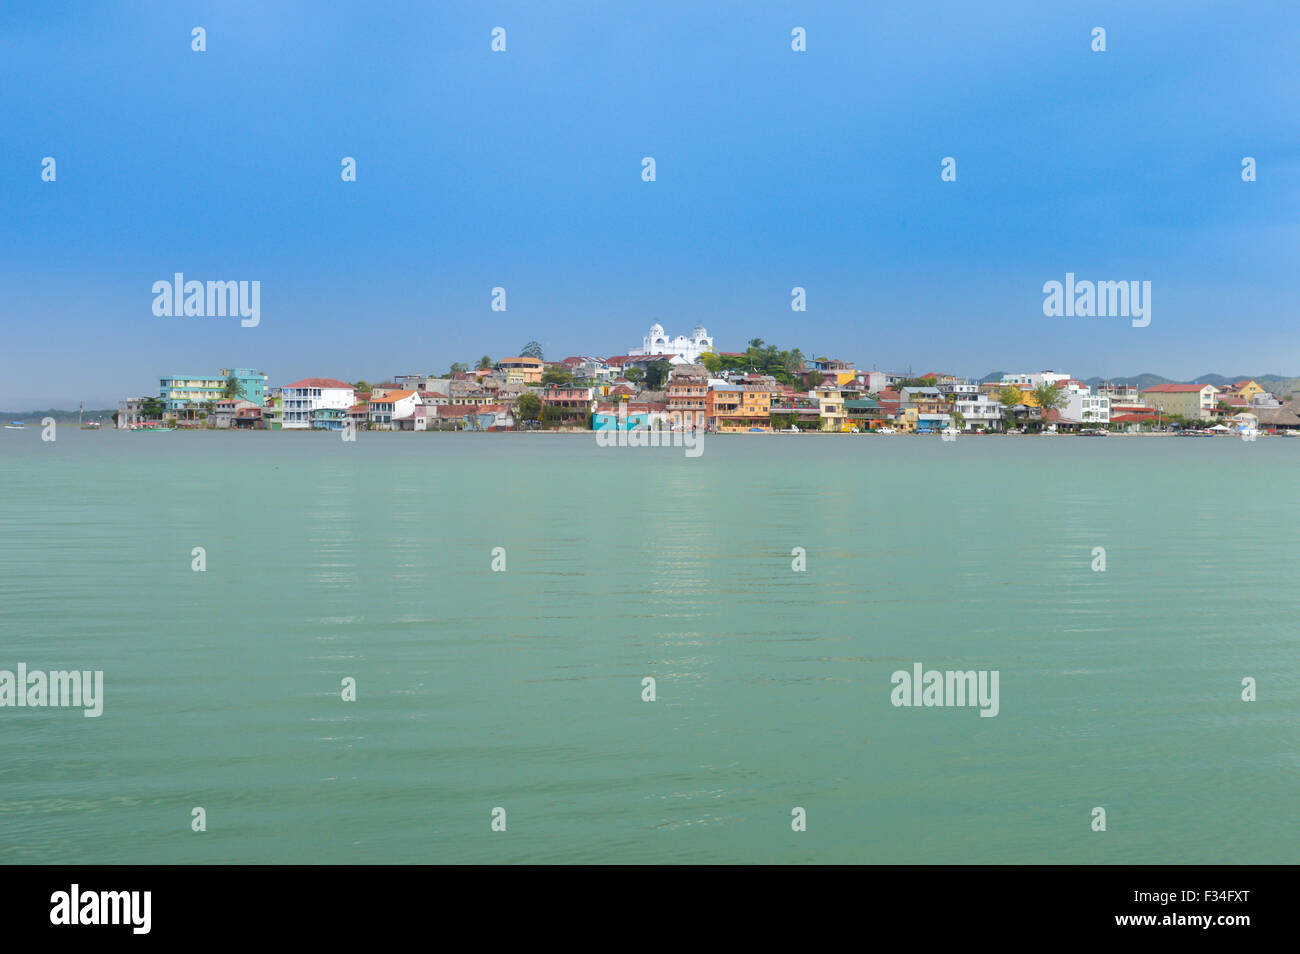 La vista de la ciudad de Flores visto desde el barco en el lago Petén Itzá, Guatemala Foto de stock